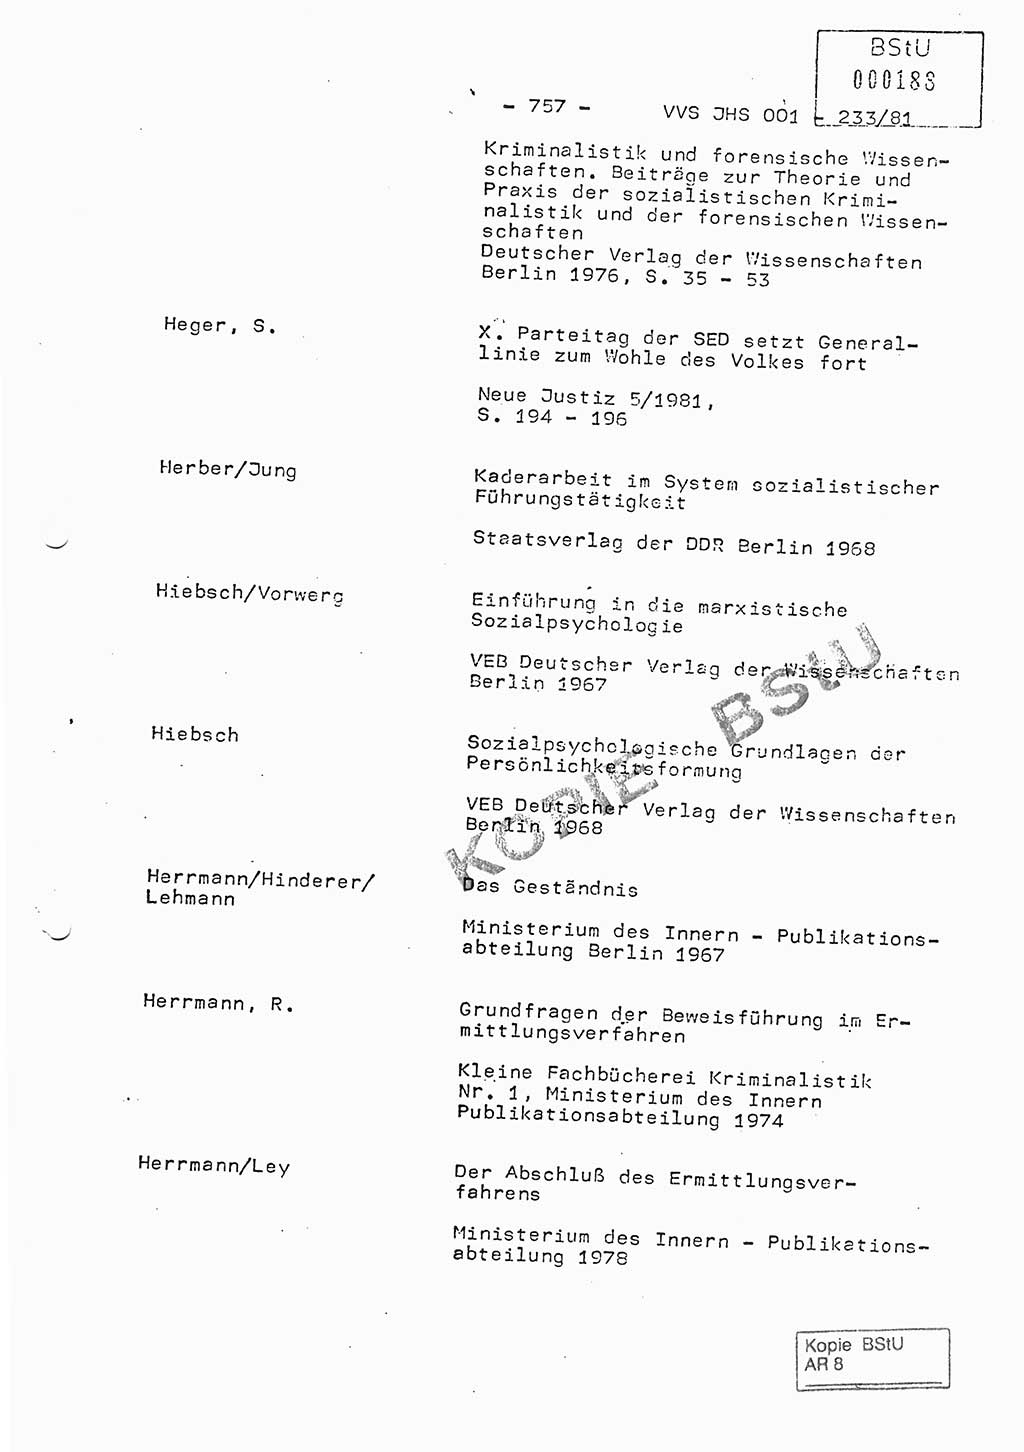 Dissertation Oberstleutnant Horst Zank (JHS), Oberstleutnant Dr. Karl-Heinz Knoblauch (JHS), Oberstleutnant Gustav-Adolf Kowalewski (HA Ⅸ), Oberstleutnant Wolfgang Plötner (HA Ⅸ), Ministerium für Staatssicherheit (MfS) [Deutsche Demokratische Republik (DDR)], Juristische Hochschule (JHS), Vertrauliche Verschlußsache (VVS) o001-233/81, Potsdam 1981, Blatt 757 (Diss. MfS DDR JHS VVS o001-233/81 1981, Bl. 757)